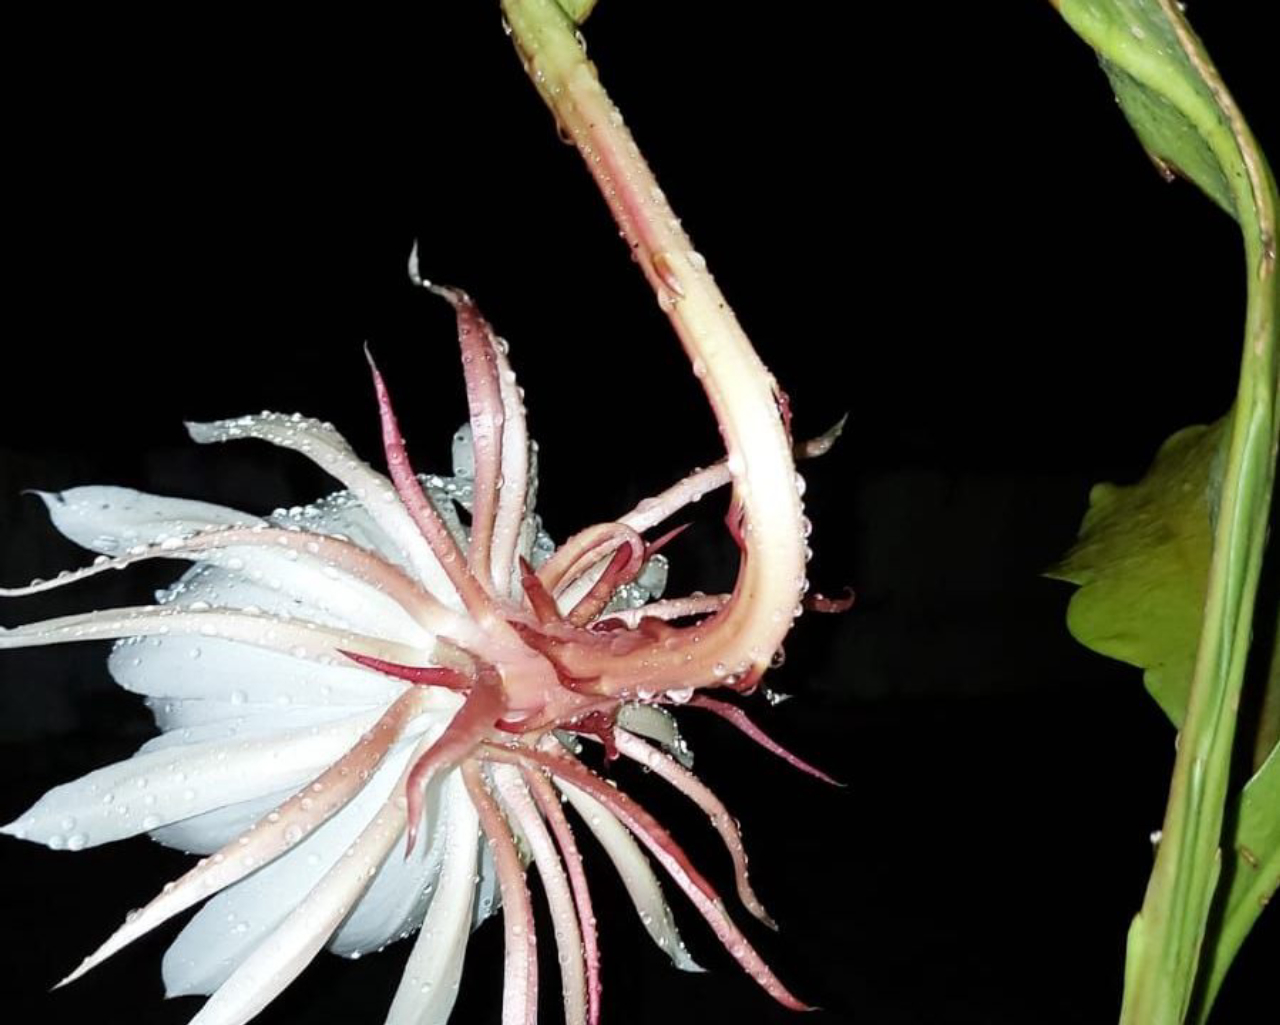 Desabrochada, a flor assume um tamanho considerável em relação ao da planta.